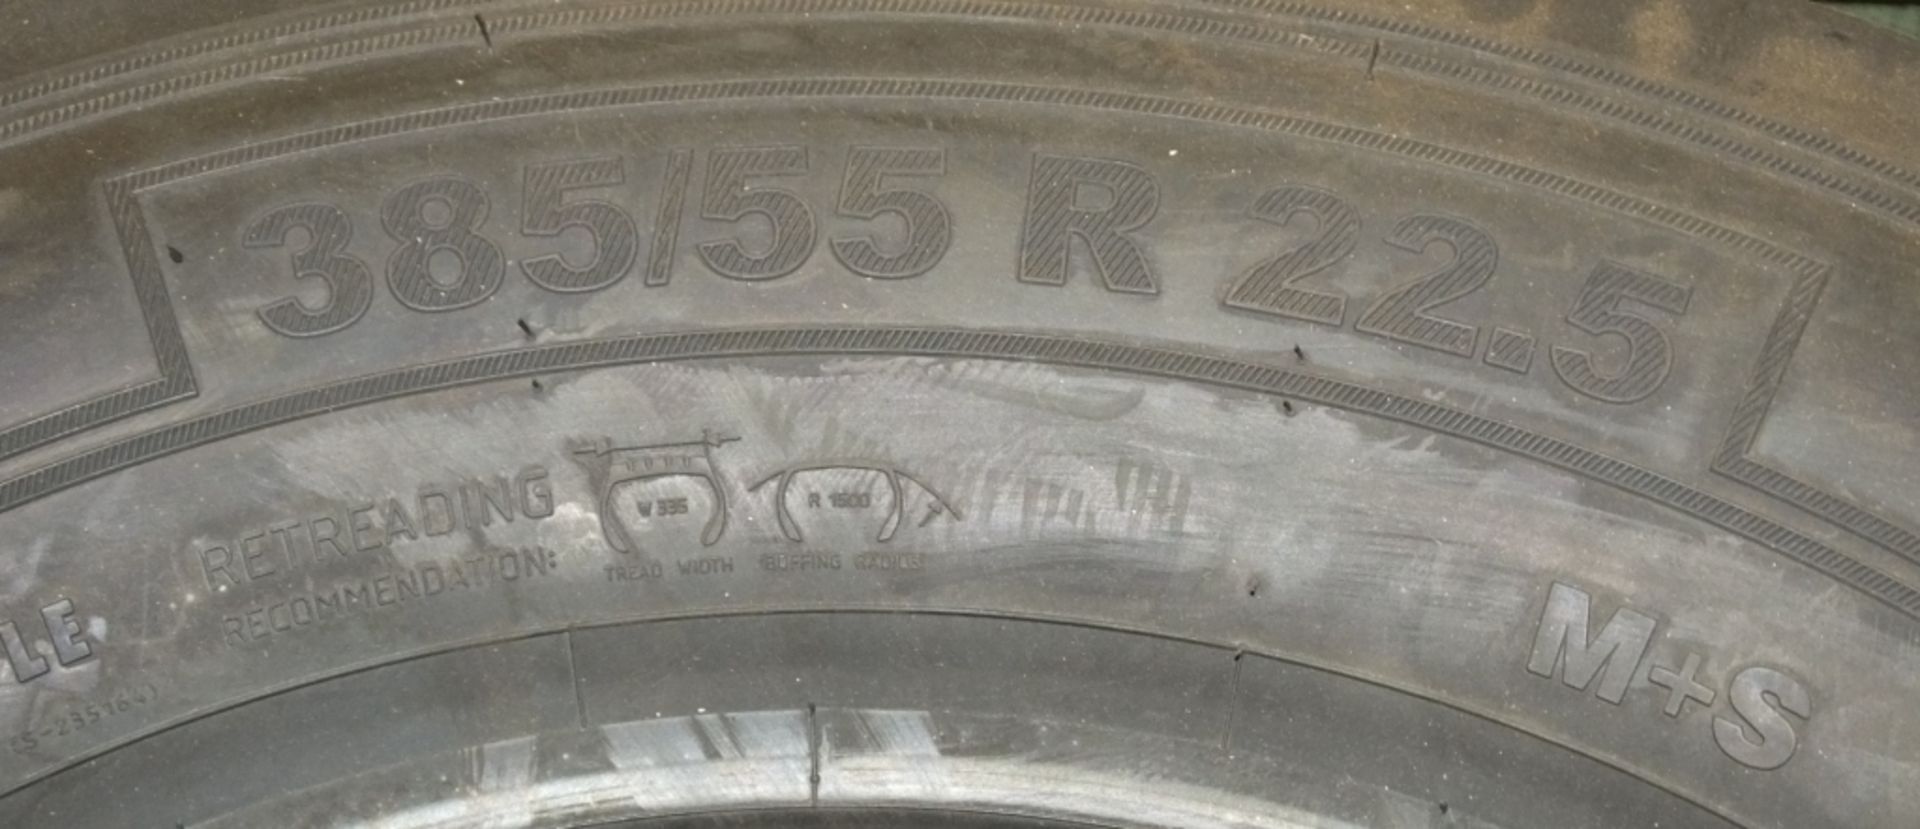 Barum BF 200 Road tire - 385/55 R 22.5 (new & unused) - Bild 3 aus 5